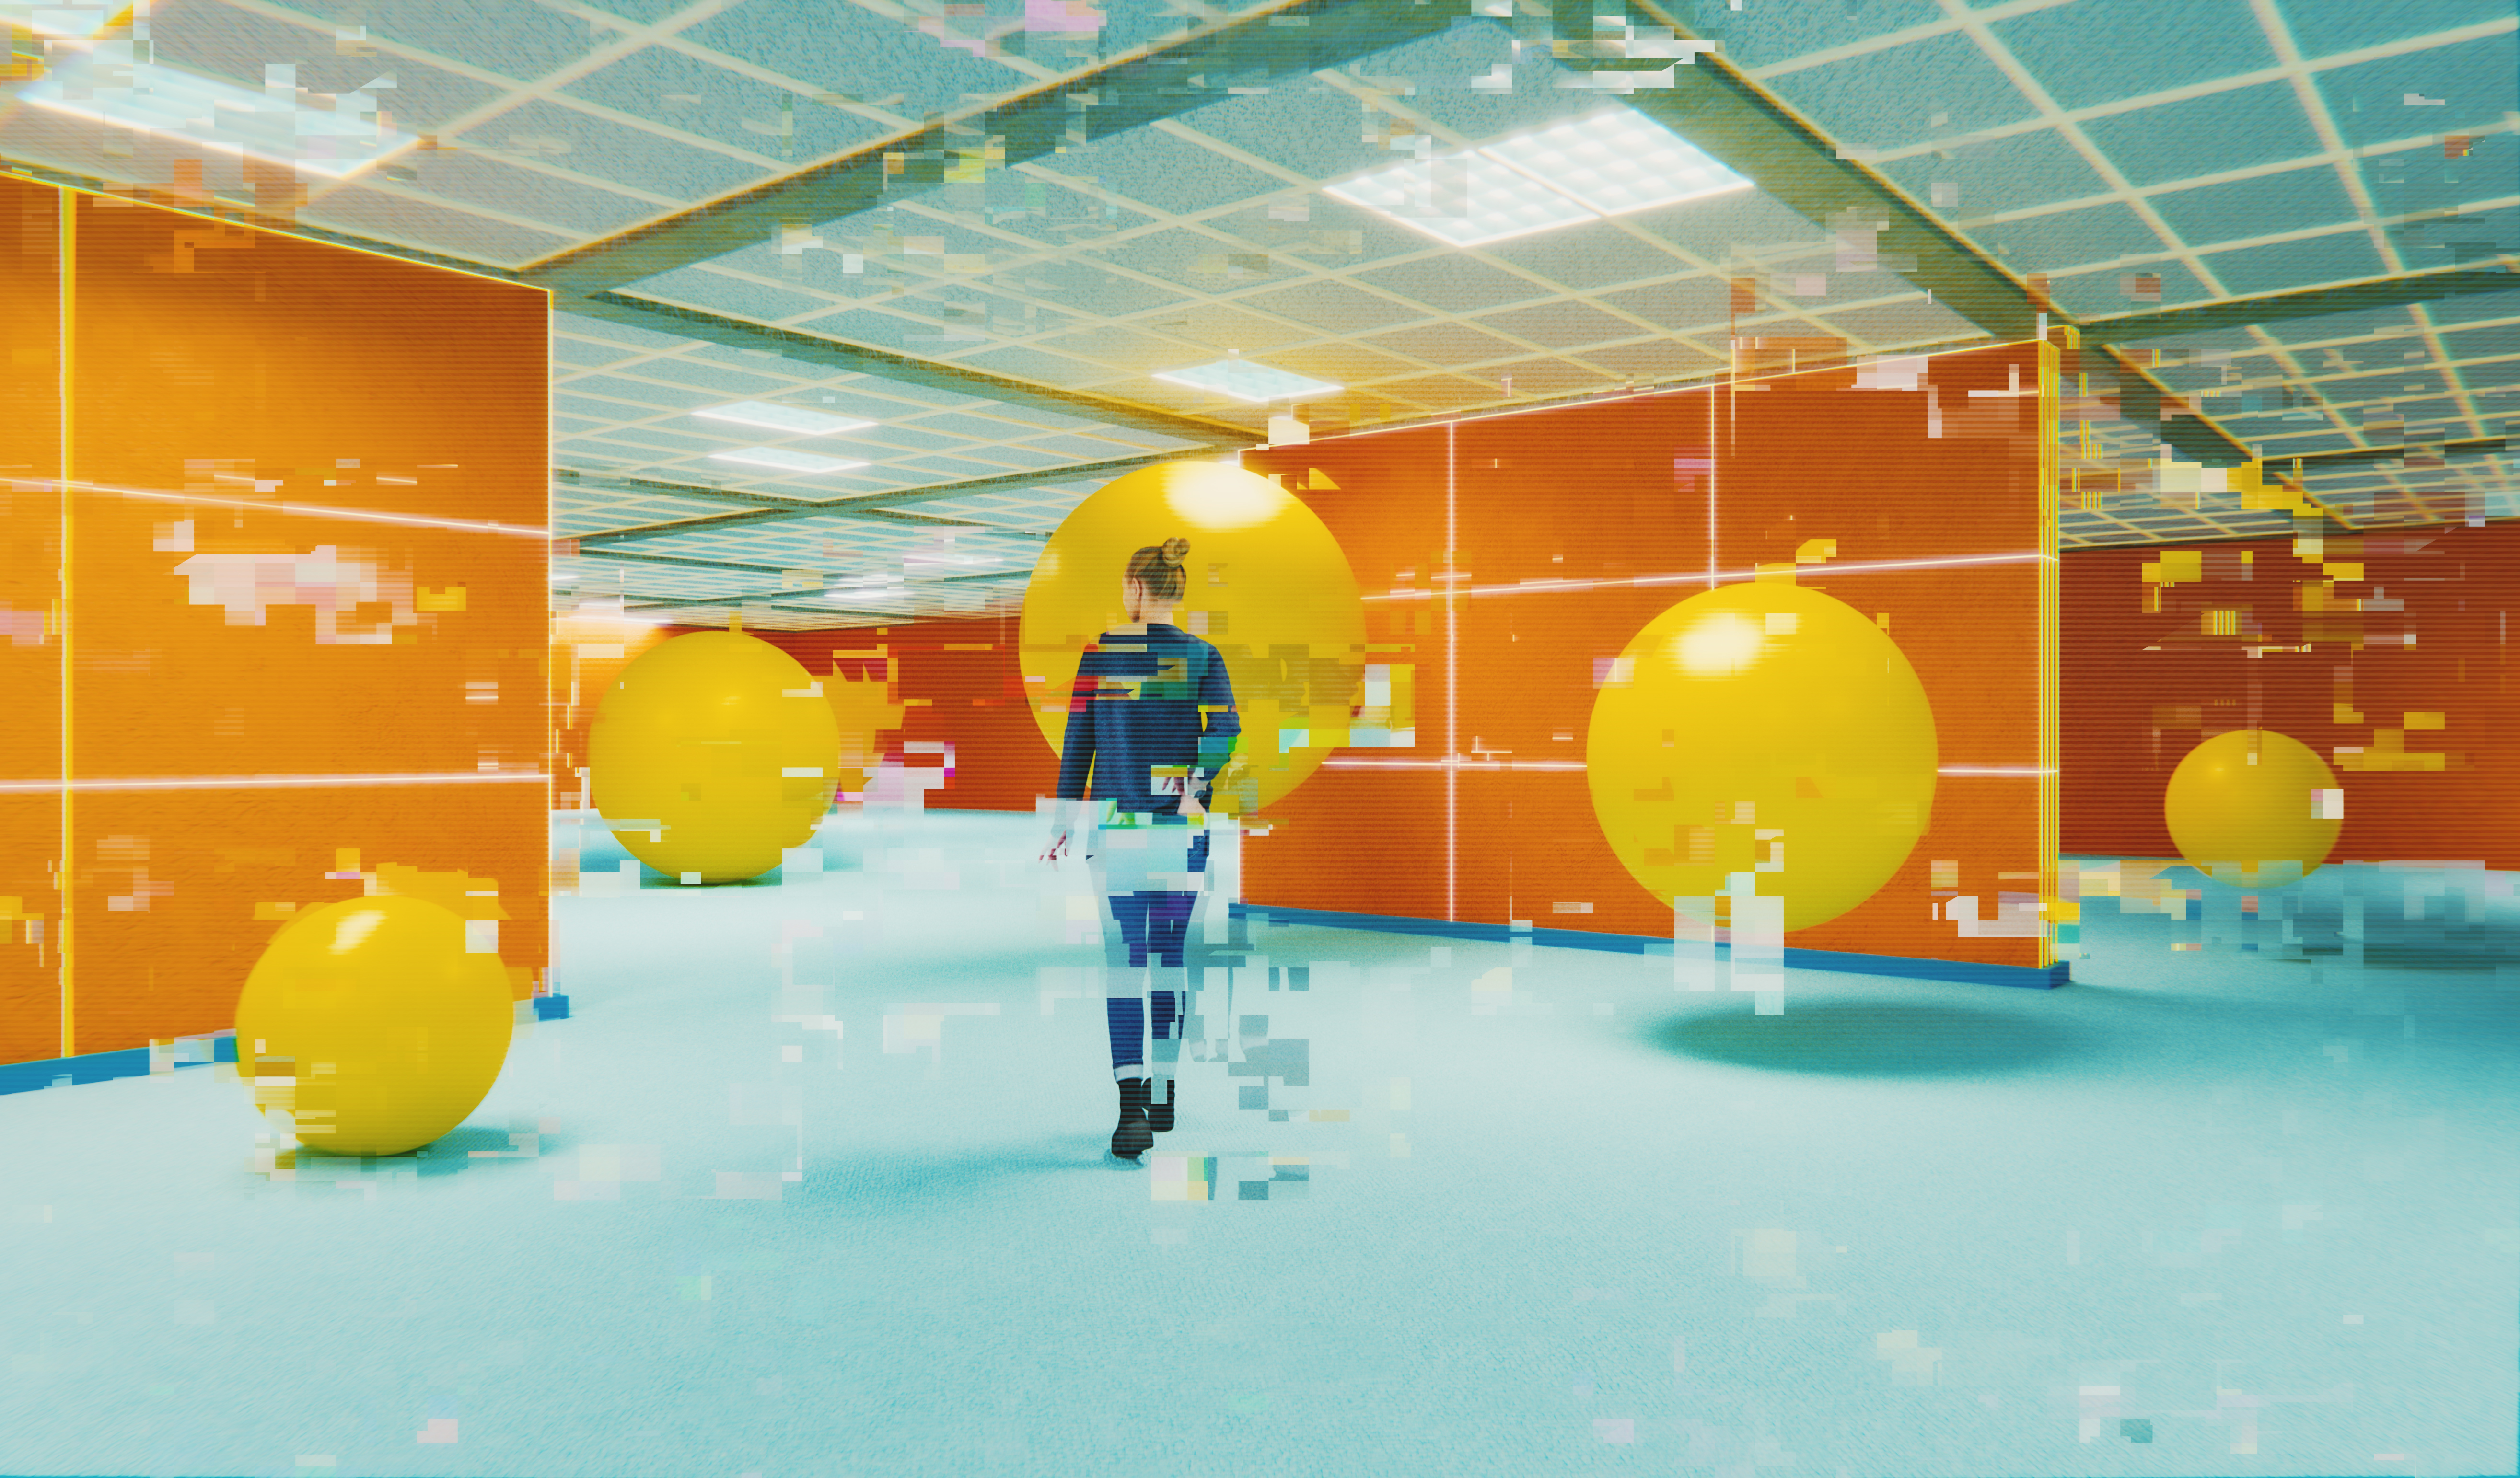 Rendu glitch d'une femme décontractée marchant dans un bureau rétro souterrain surréaliste.  Image générée en 3D.